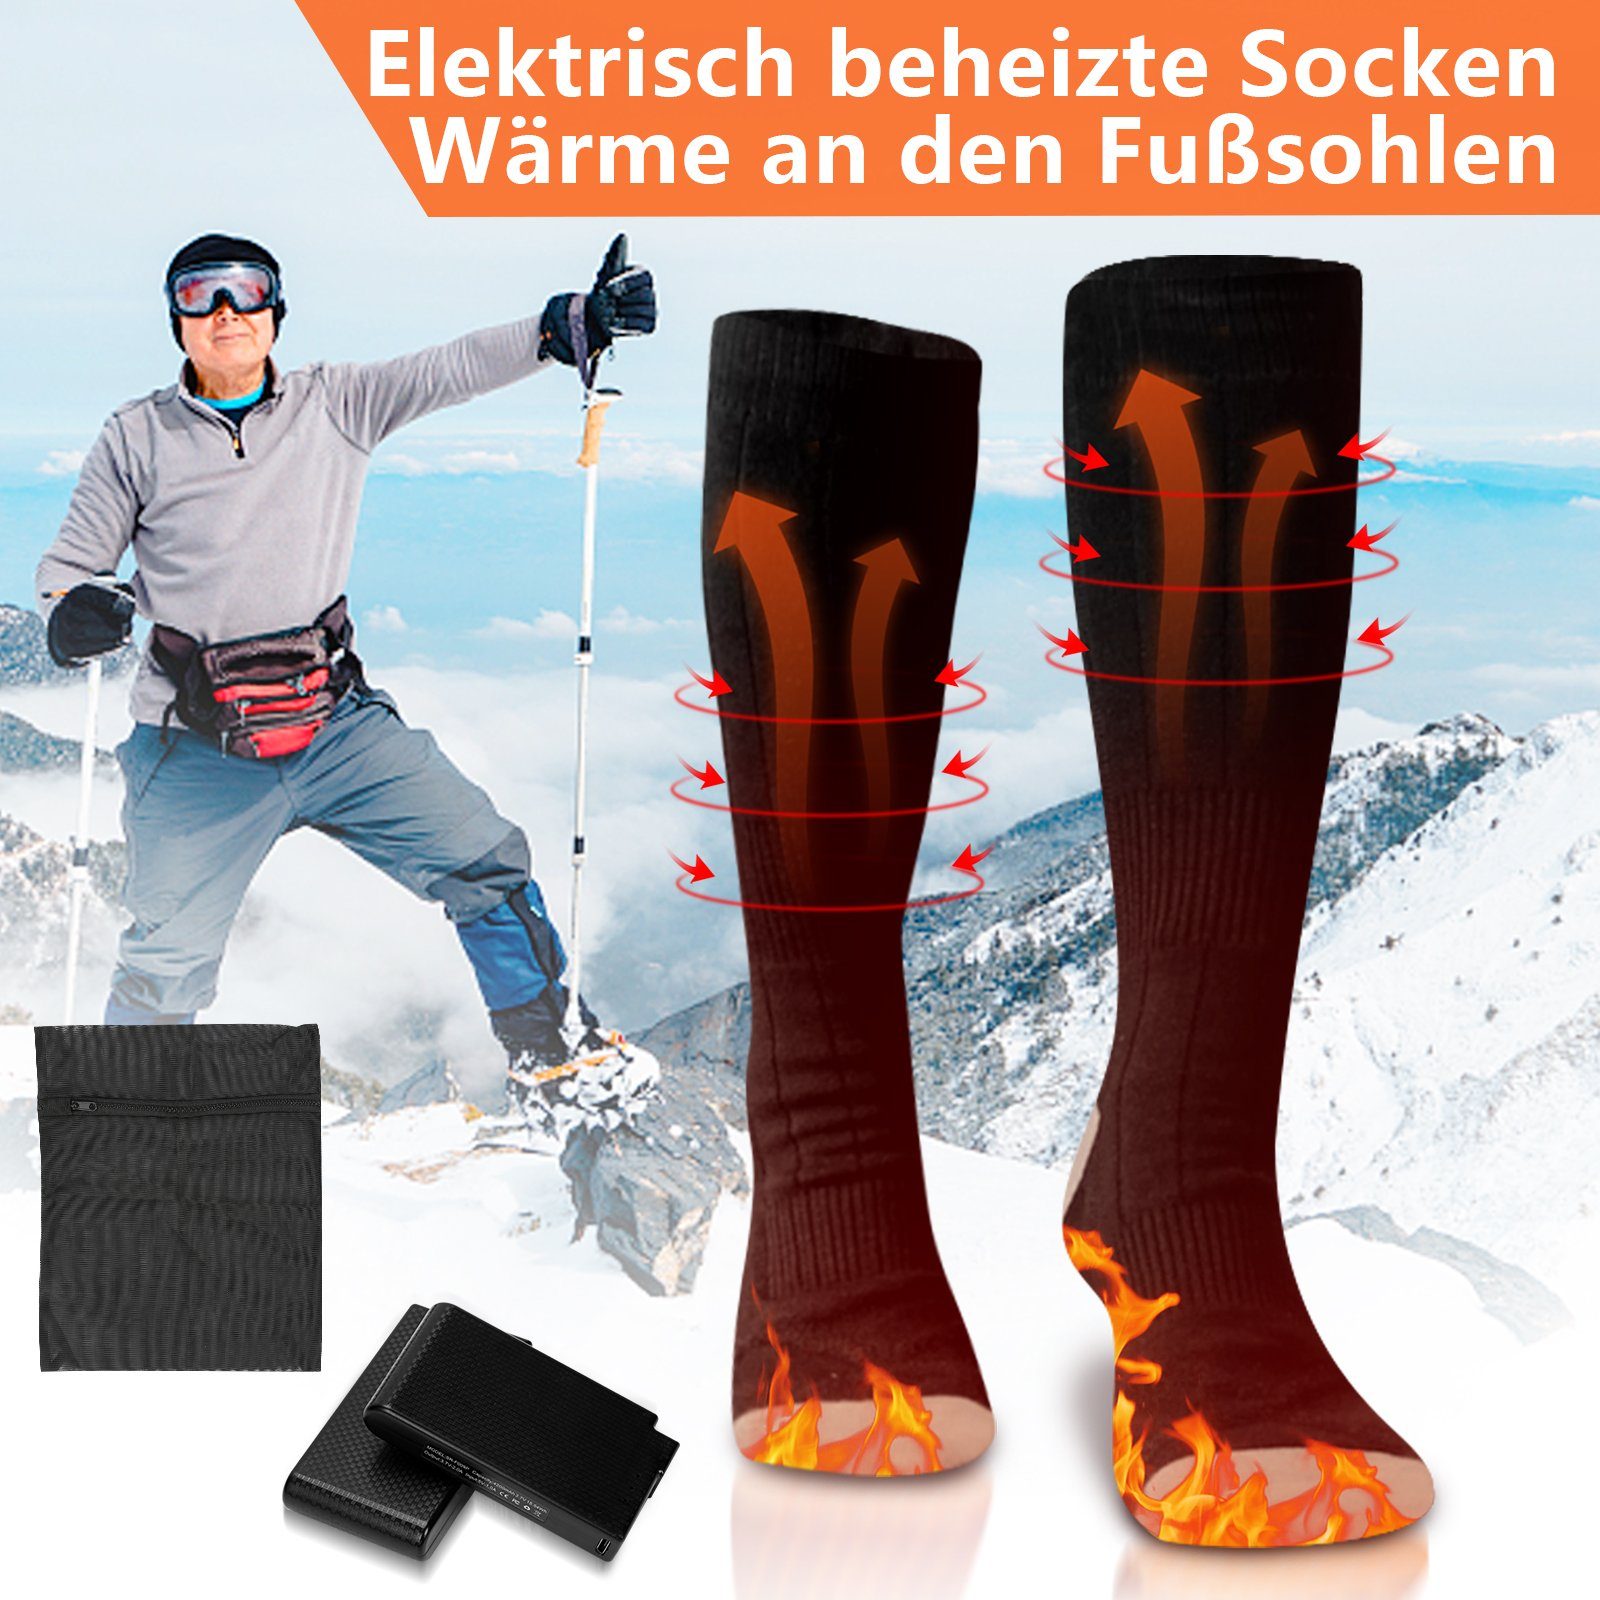 4200mAh Beheizbare Einlegesohlen elektrisch Socken Gimisgu Sportsocken Kaltwetter Therm-ic